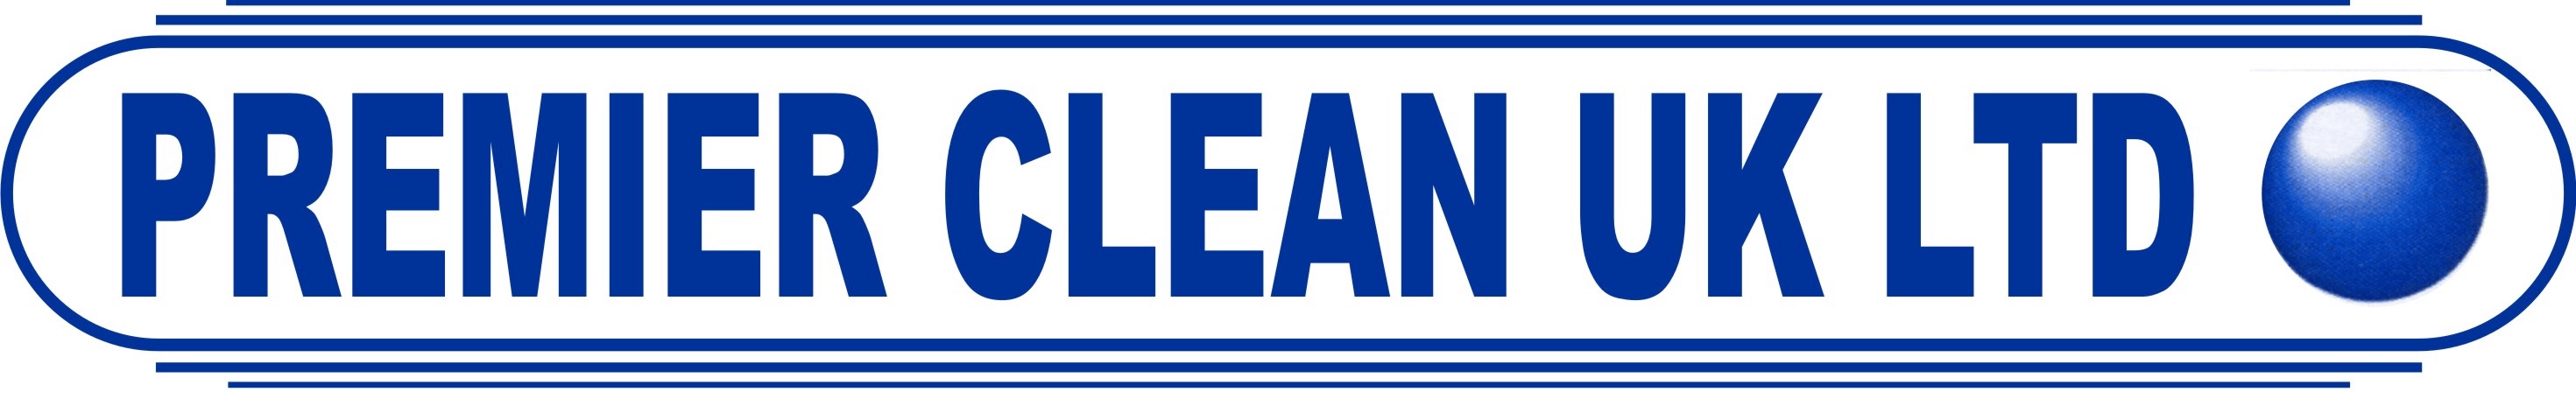 Premier Clean UK LTD image.